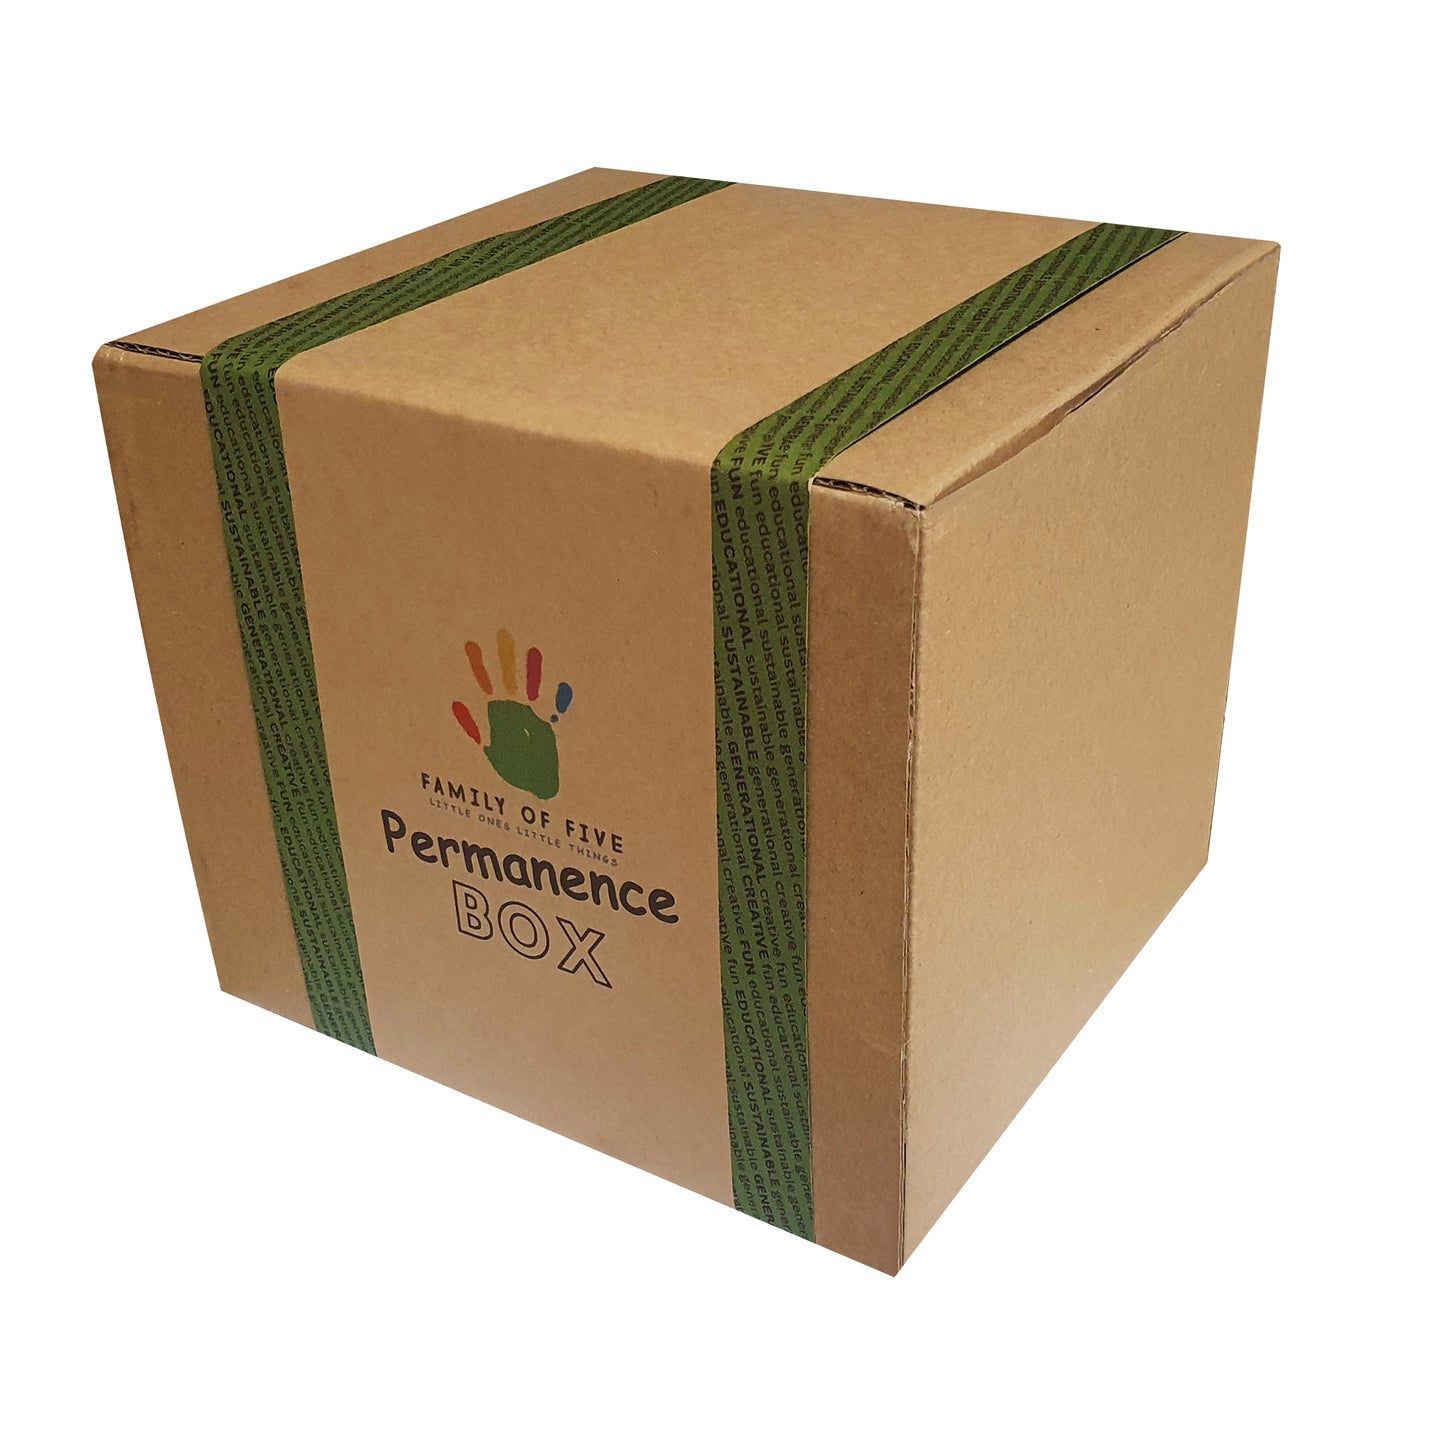 Oak Permanence Box